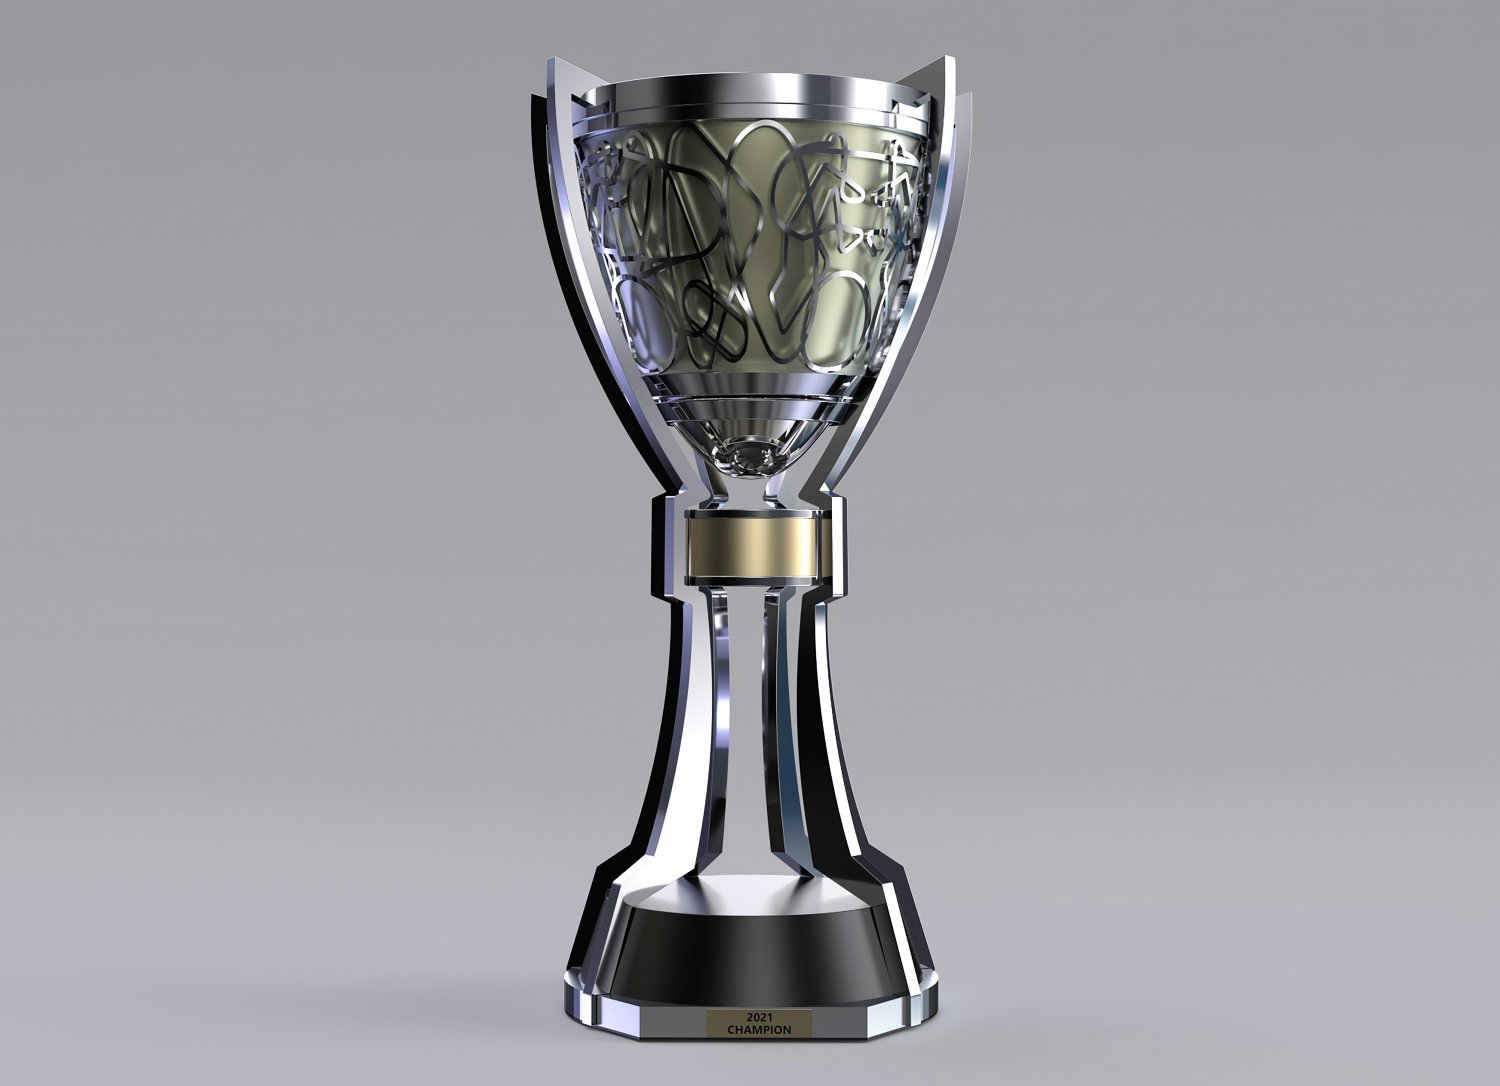 Roland Garros Mens Trophy 3D Model